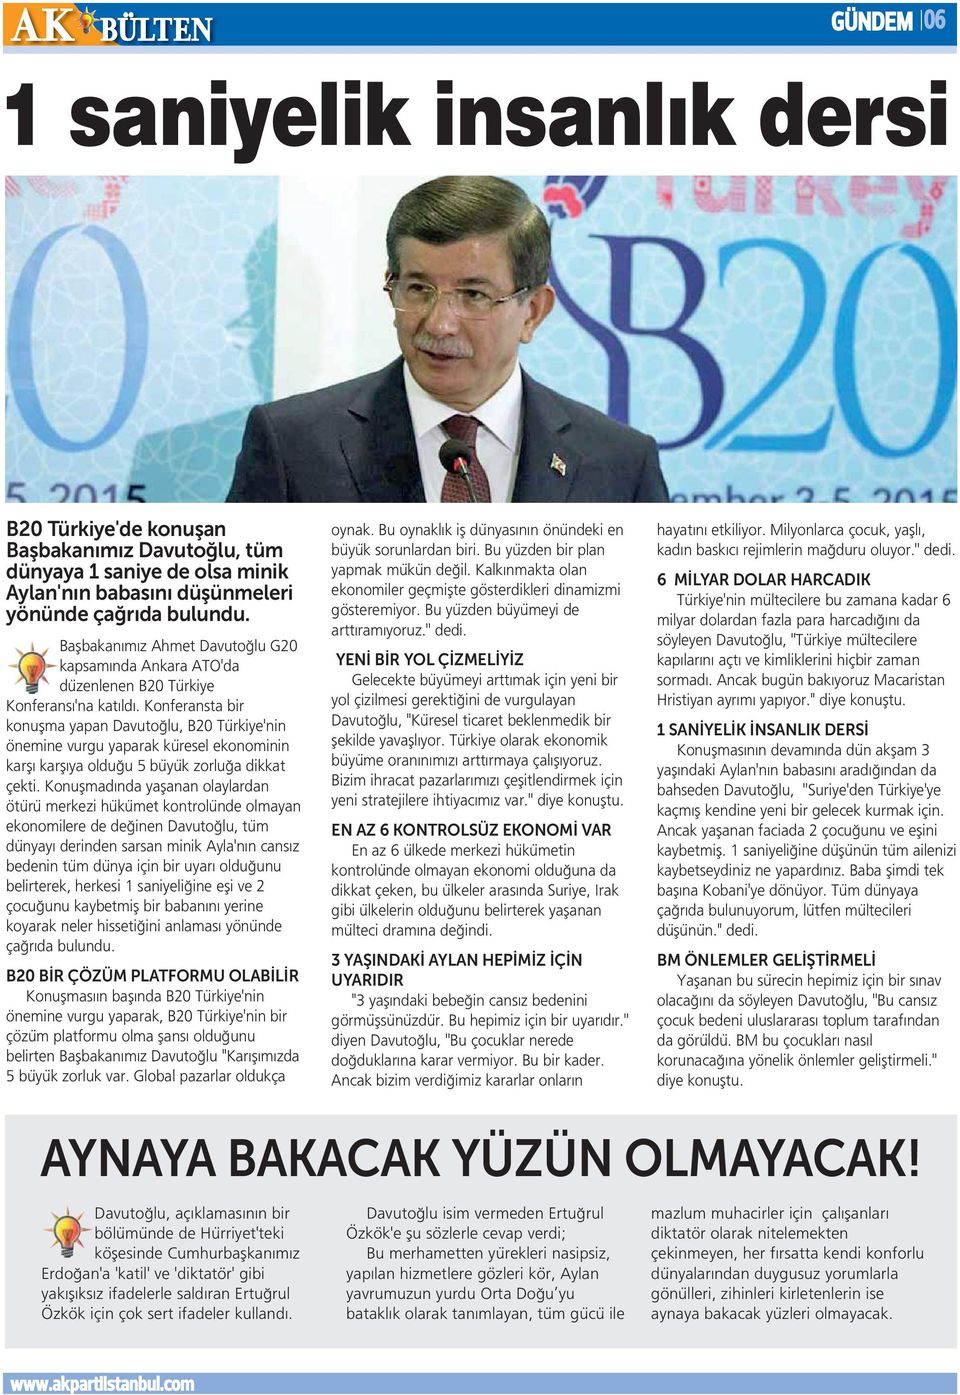 Konferansta bir konuşma yapan Davutoğlu, B20 Türkiye'nin önemine vurgu yaparak küresel ekonominin karşı karşıya olduğu 5 büyük zorluğa dikkat çekti.